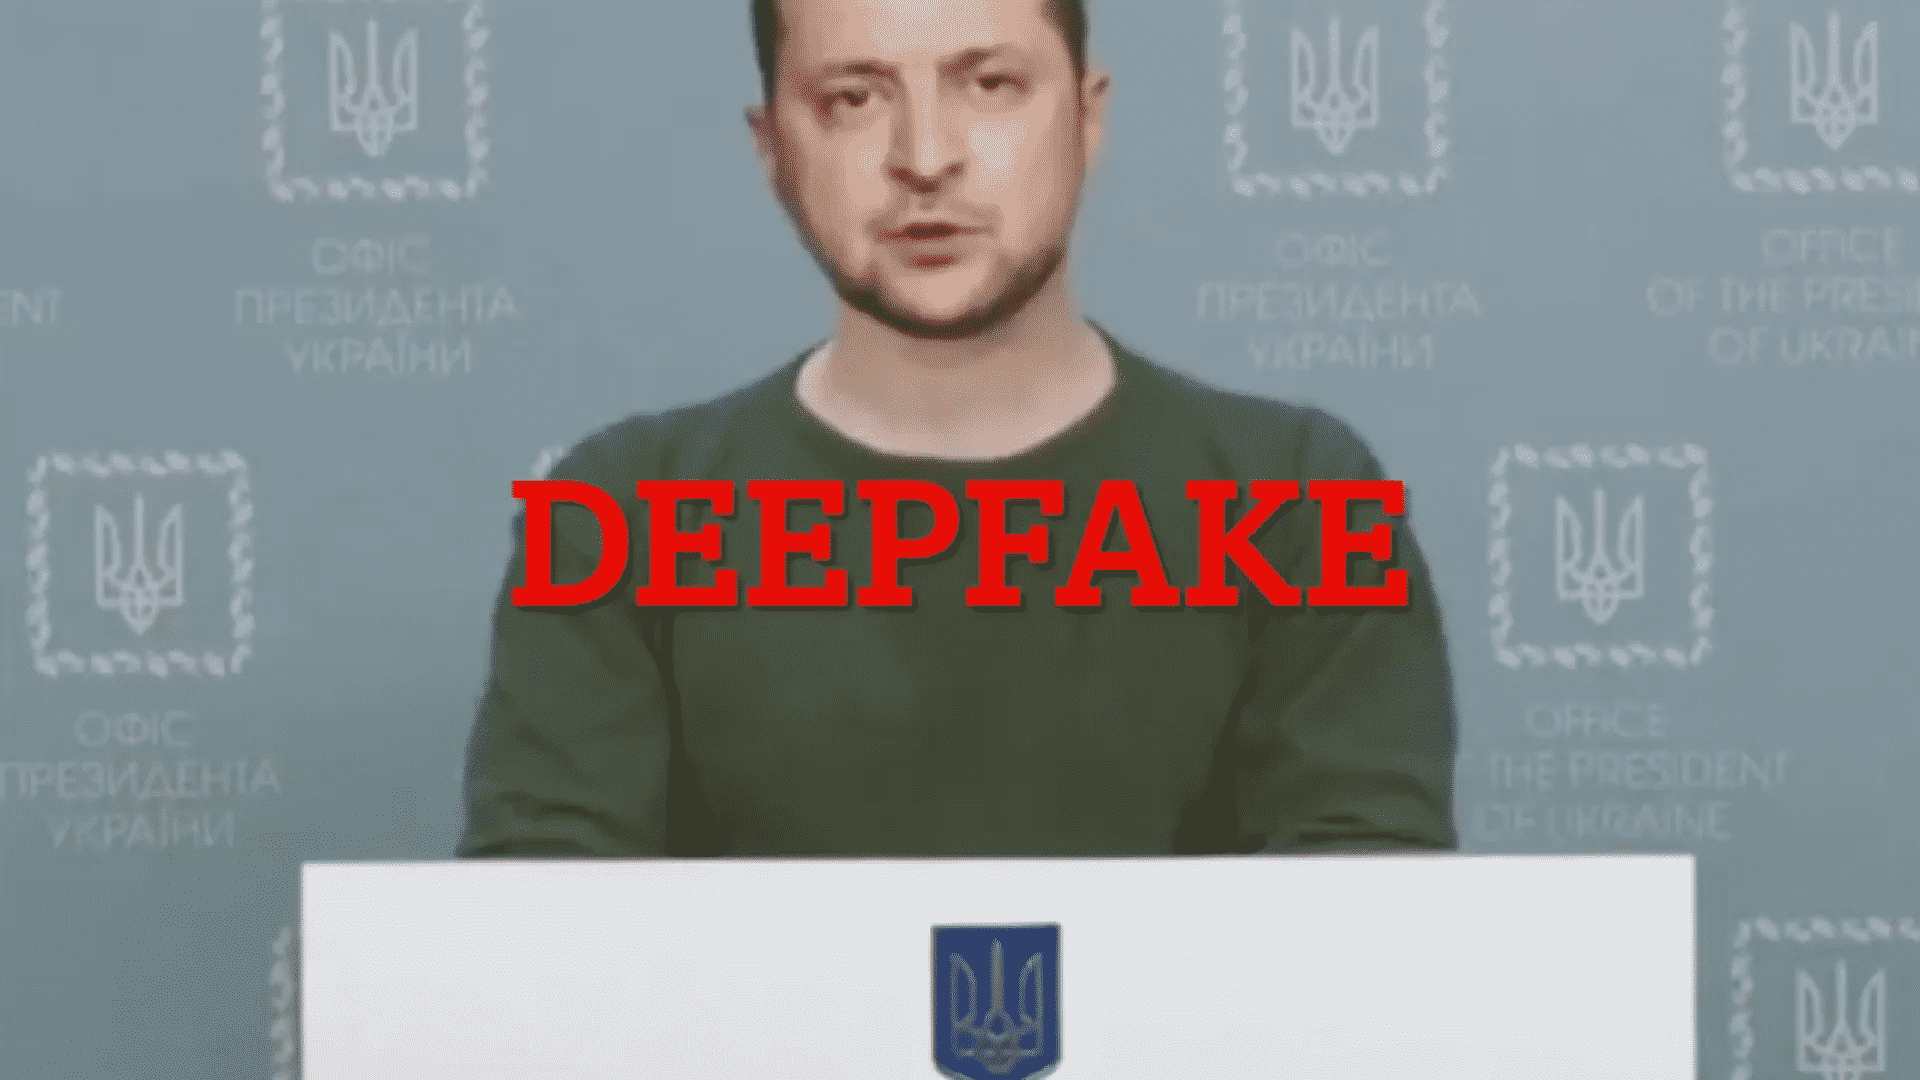 Facebook exclui deepfake onde Zelensky pede ao exército para reenviar